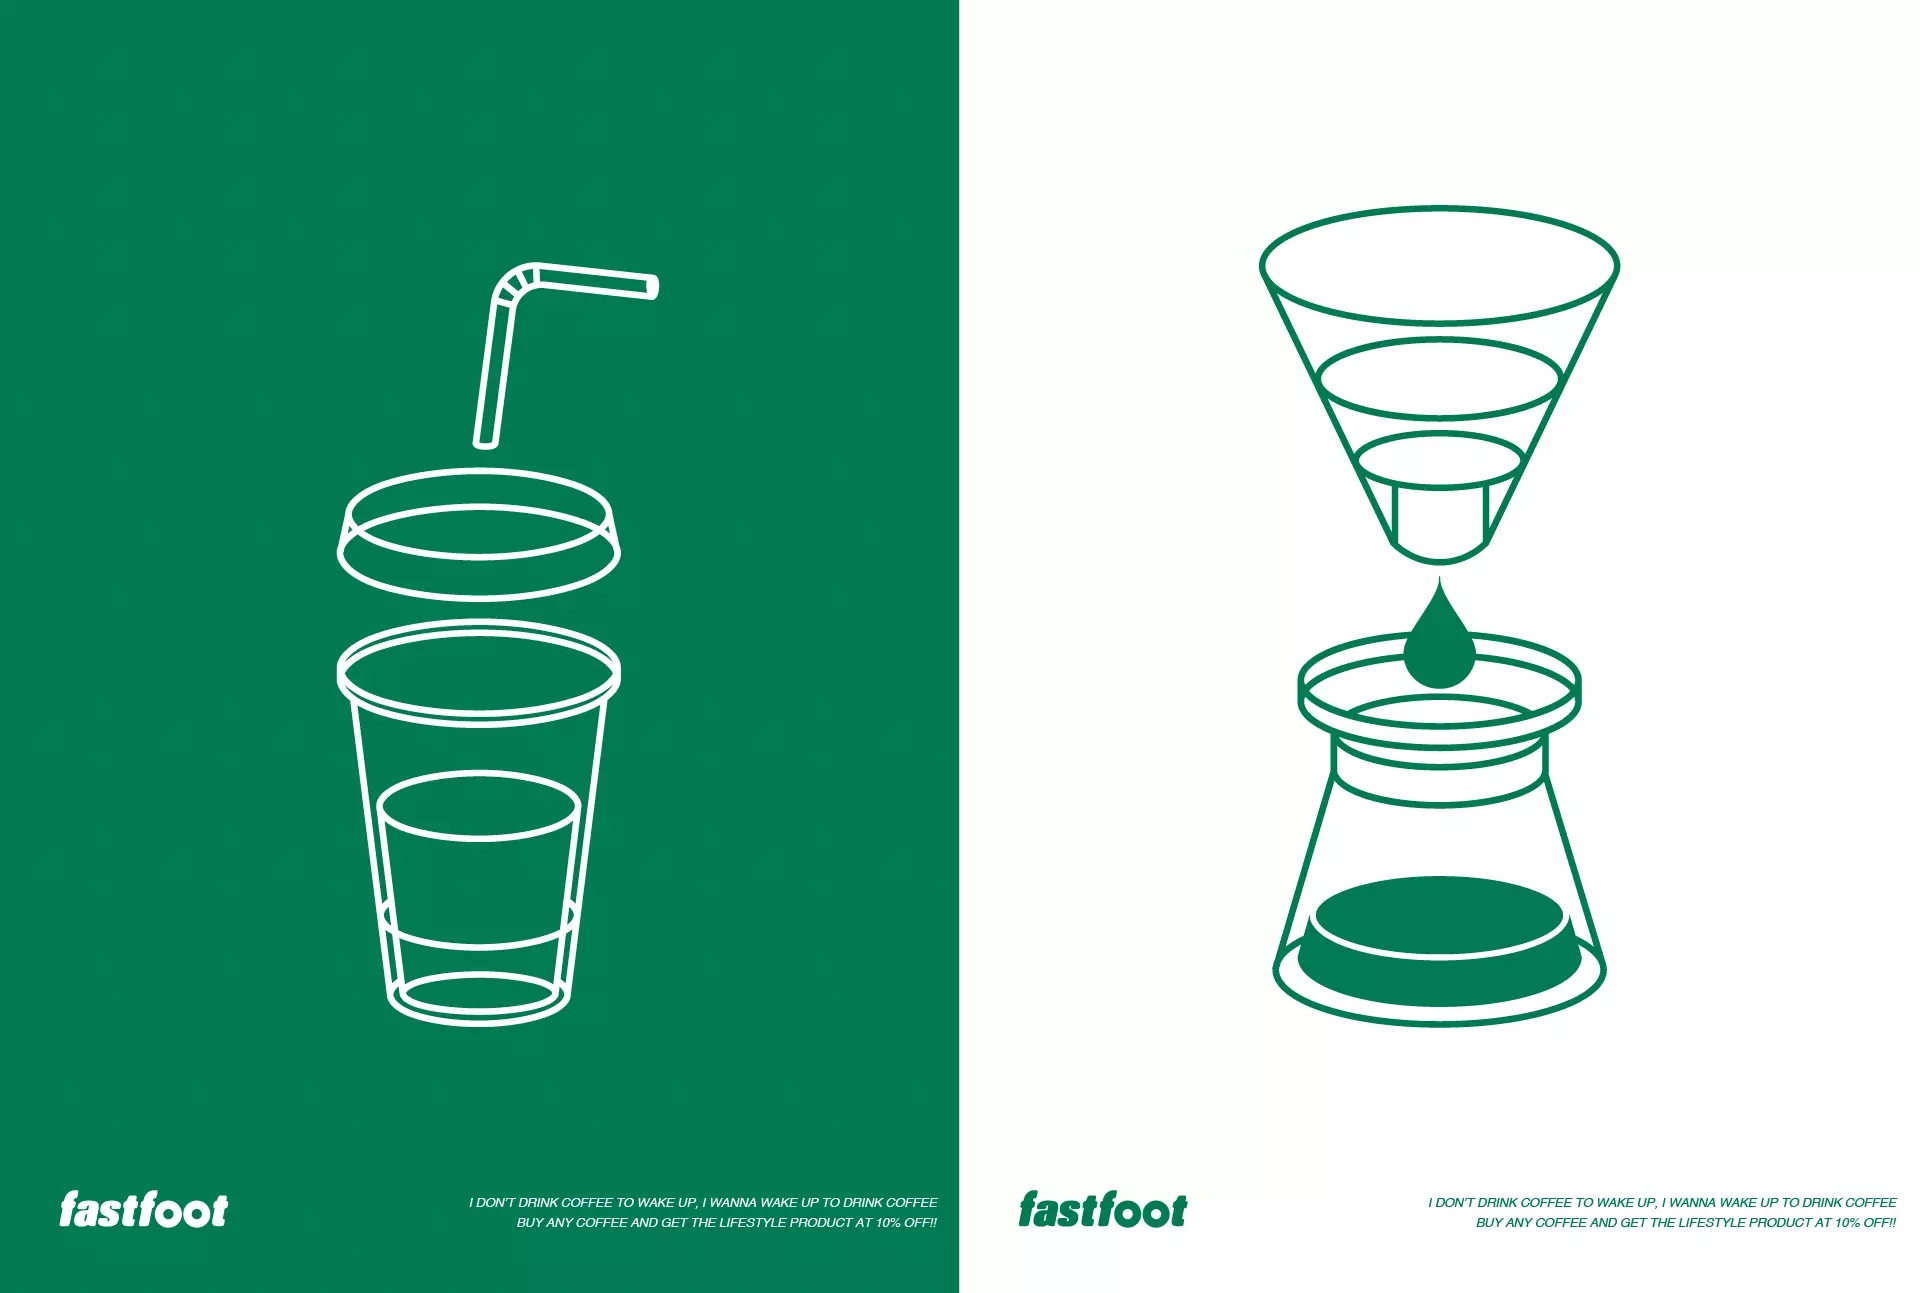 再叁食研设计急急脚啡公司FASTFOOT平面品牌再图标